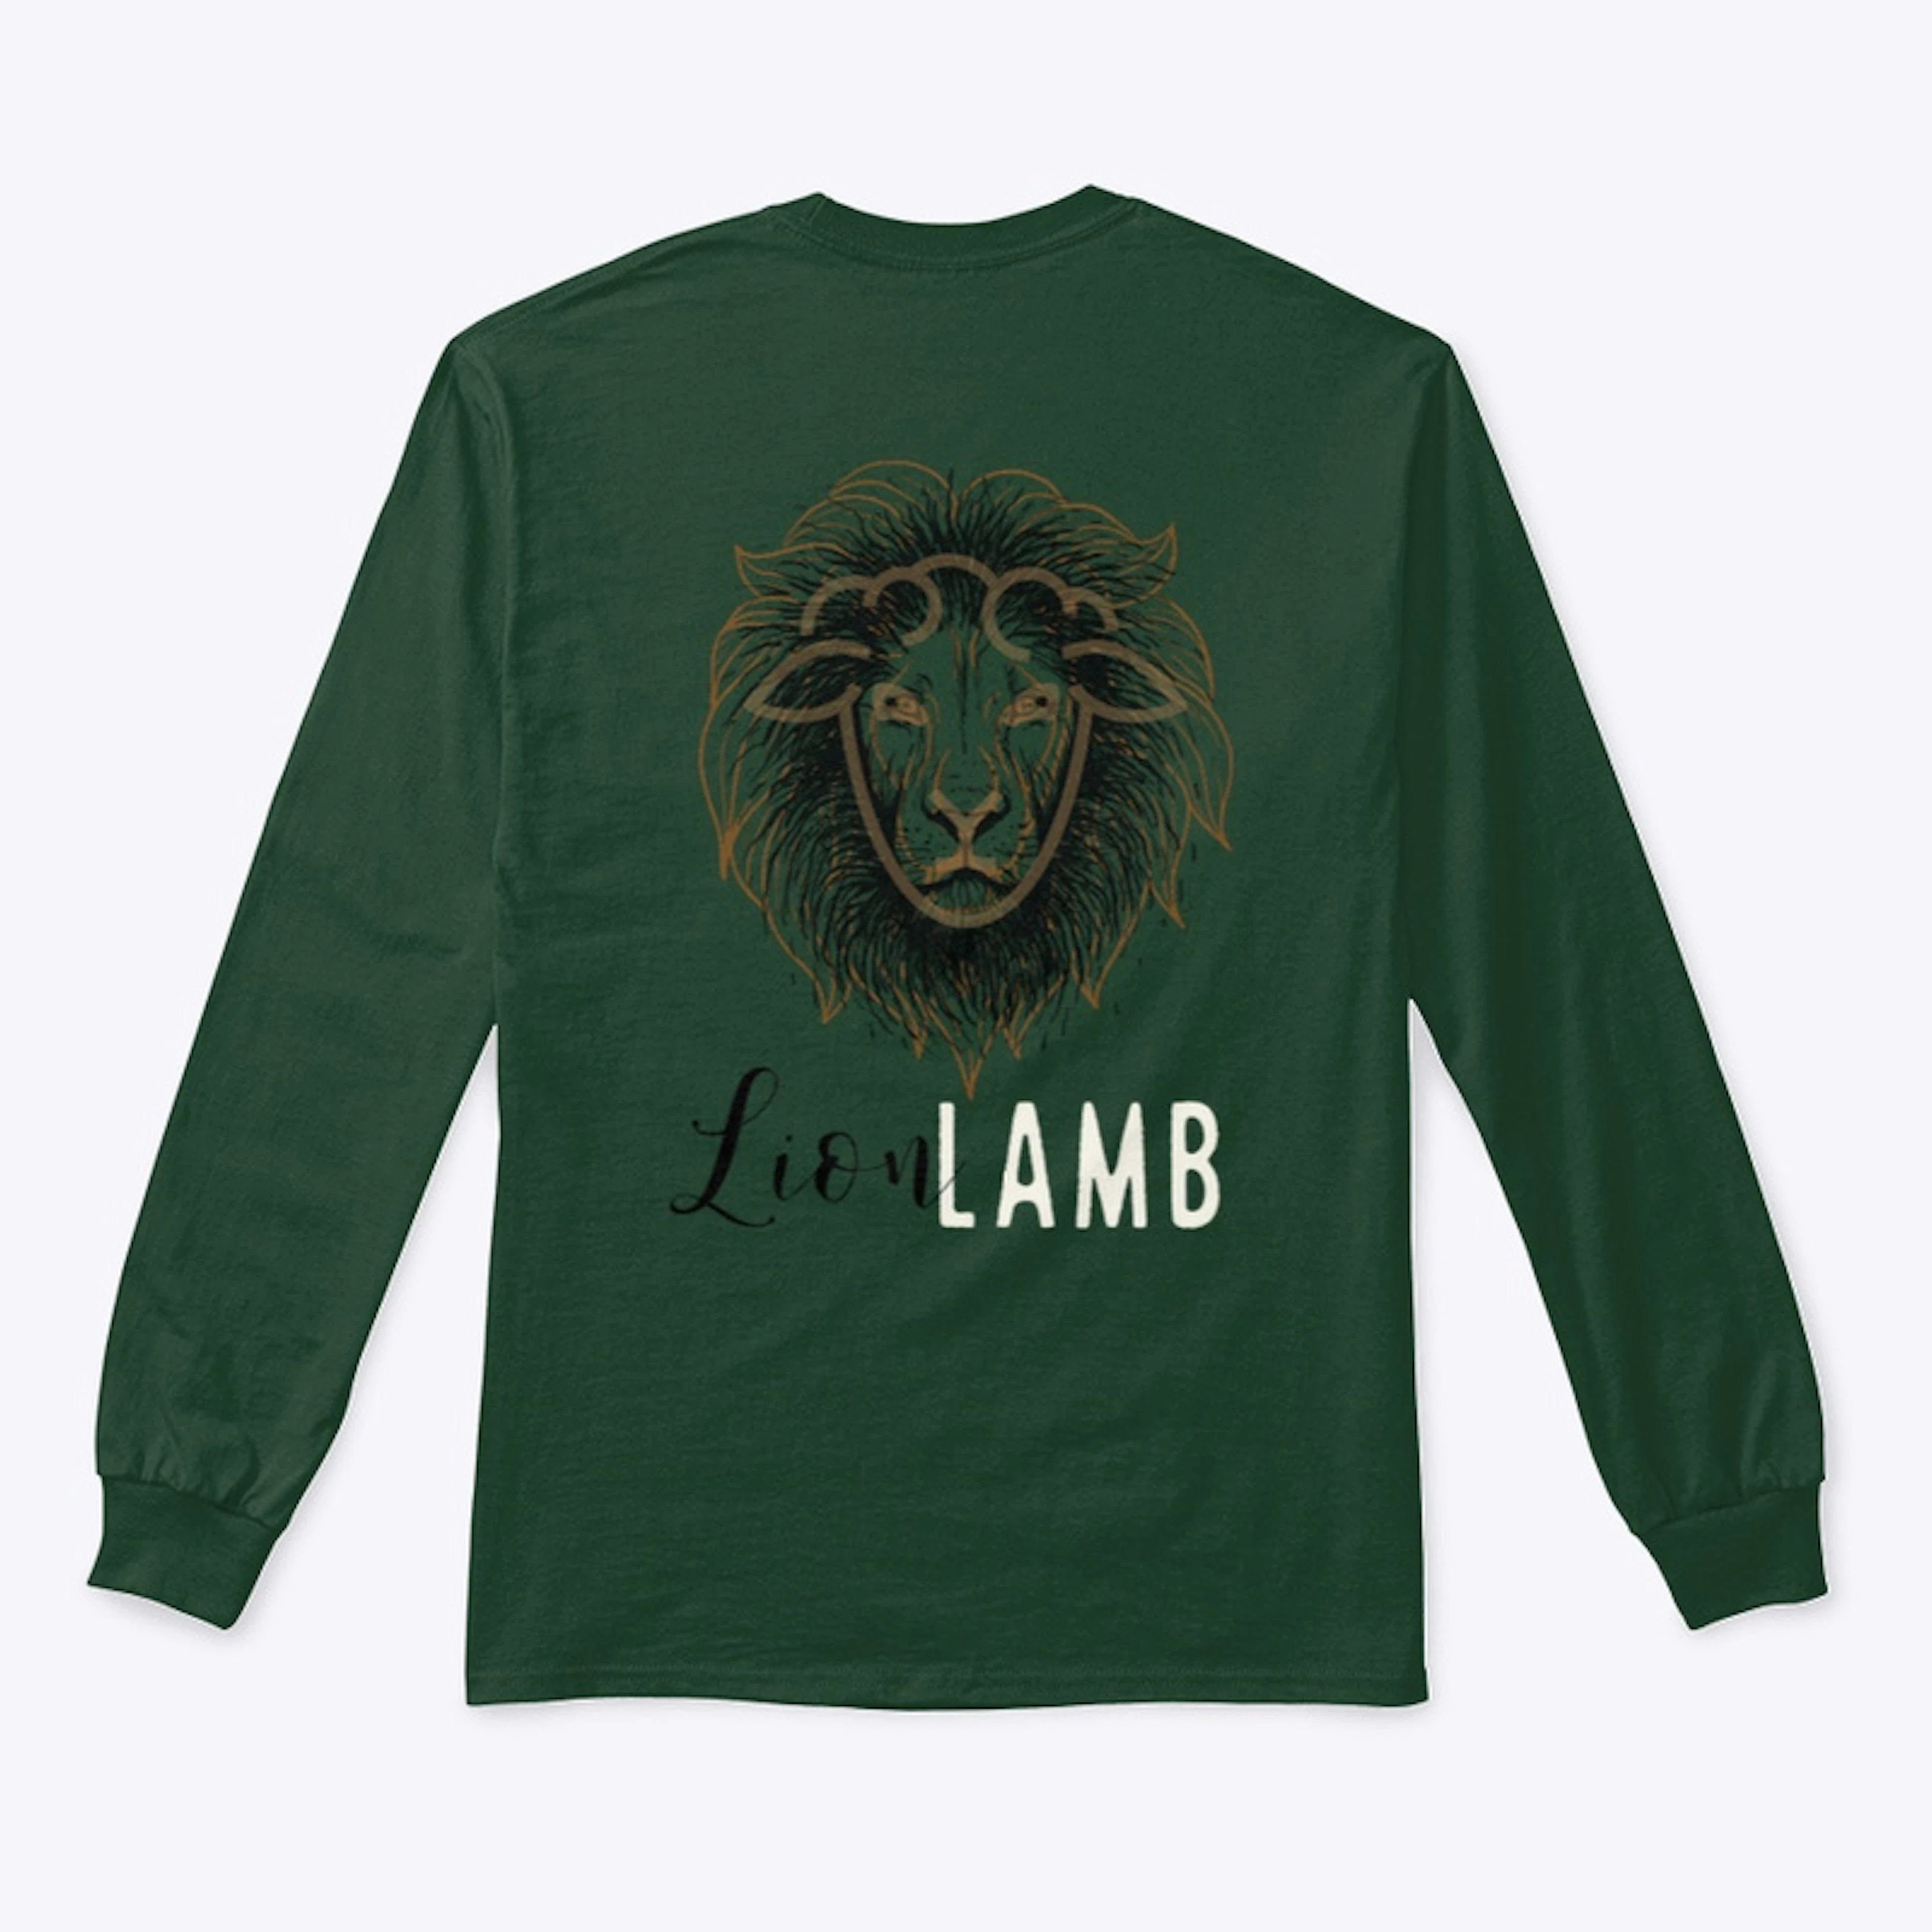 LION LAMB